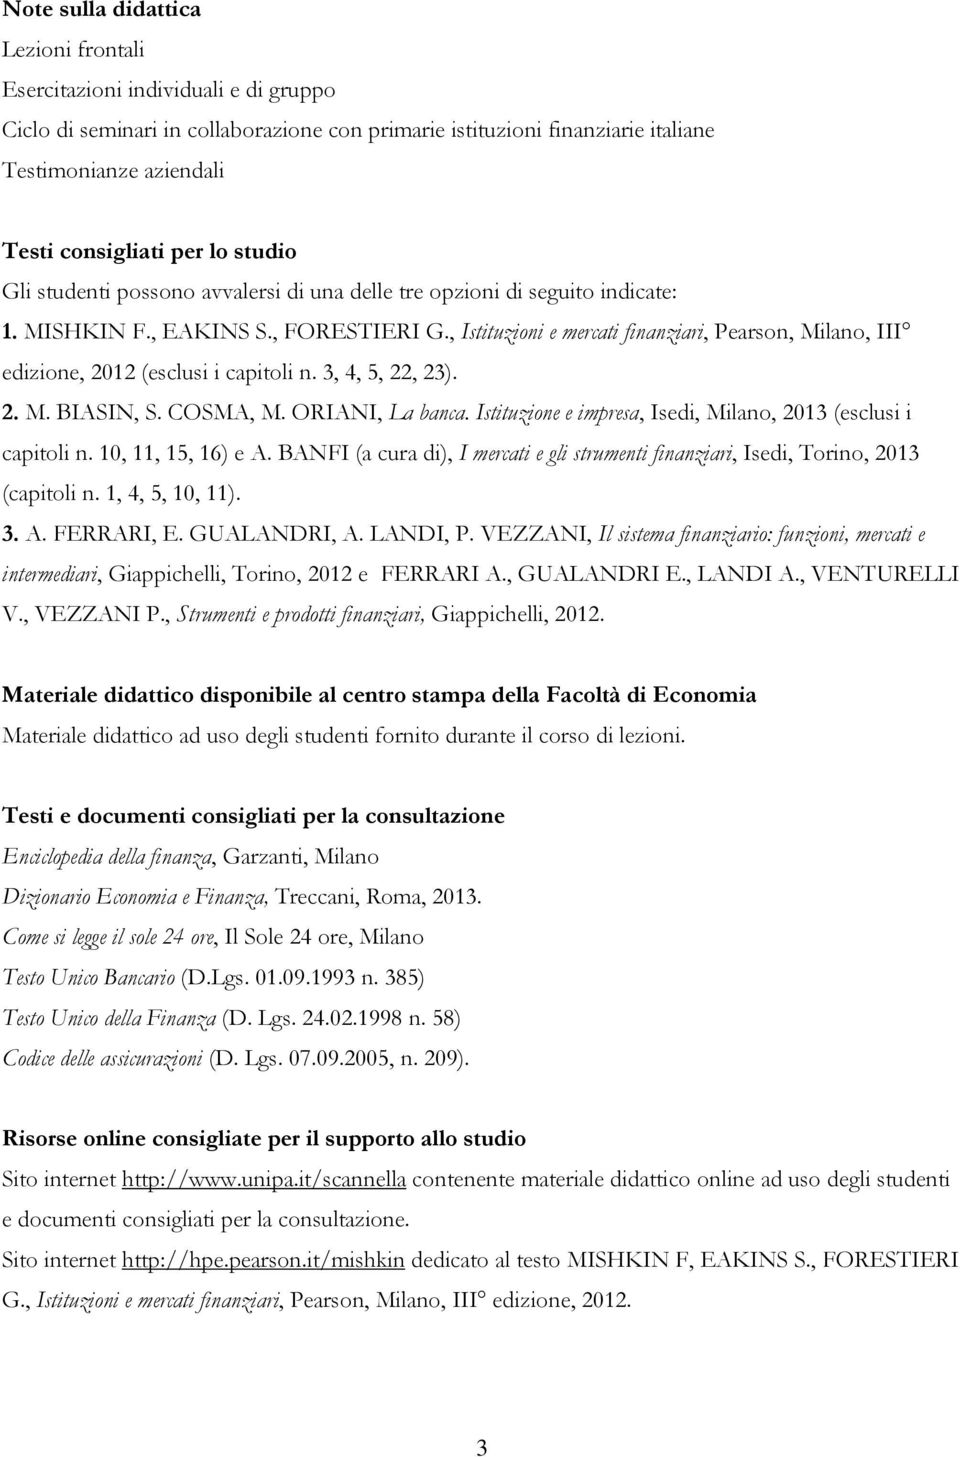 , Istituzioni e mercati finanziari, Pearson, Milano, III edizione, 2012 (esclusi i capitoli n. 3, 4, 5, 22, 23). 2. M. BIASIN, S. COSMA, M. ORIANI, La banca.